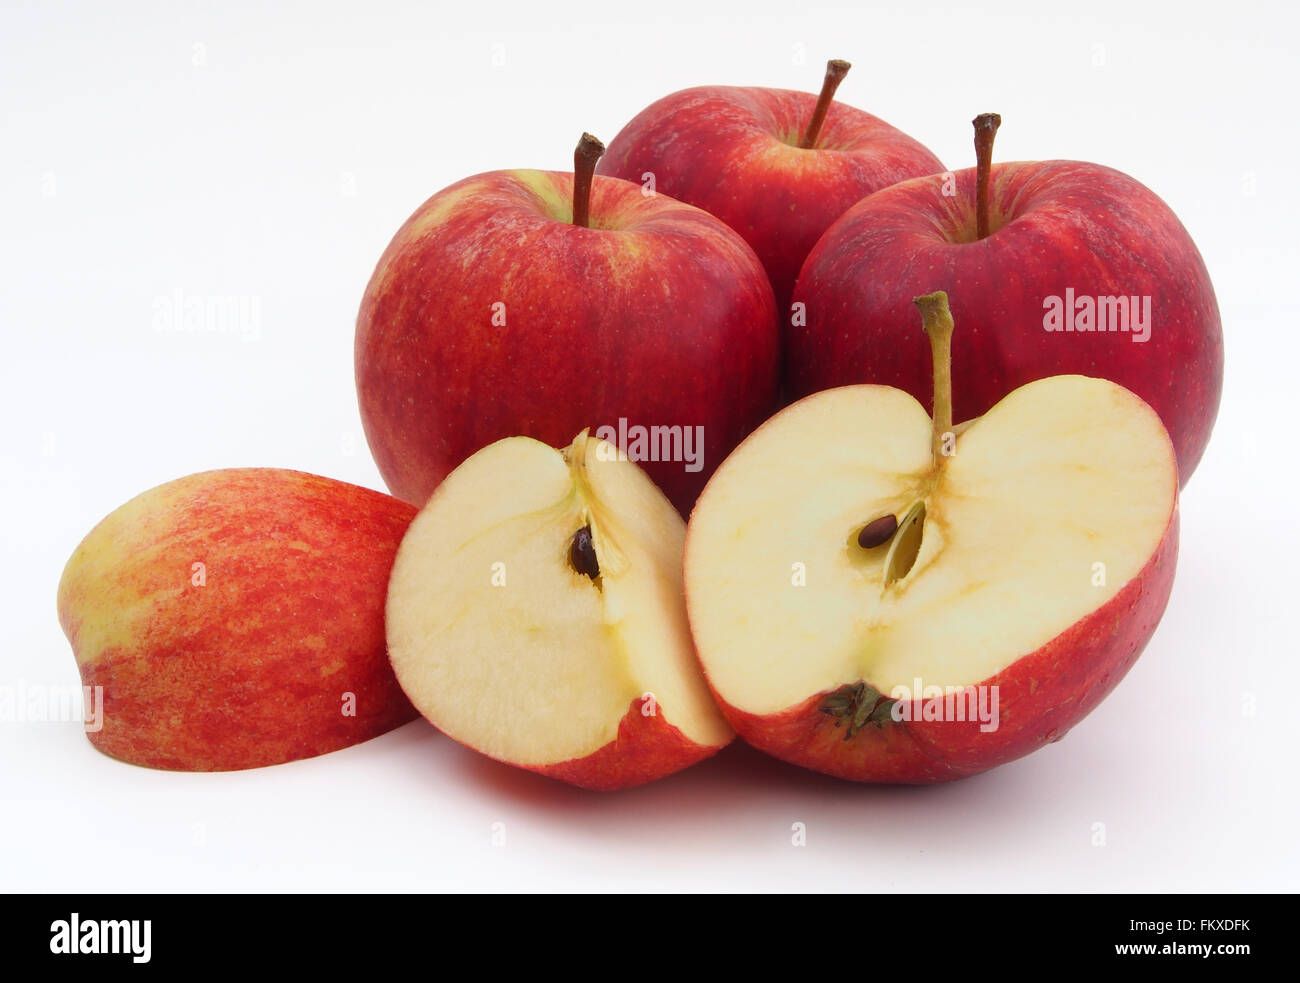 Vier rote Gala Äpfel mit einer in Scheiben geschnitten in die Hälfte und Viertel zeigt den Kern, isoliert auf einem weißen Hintergrund. Stockfoto